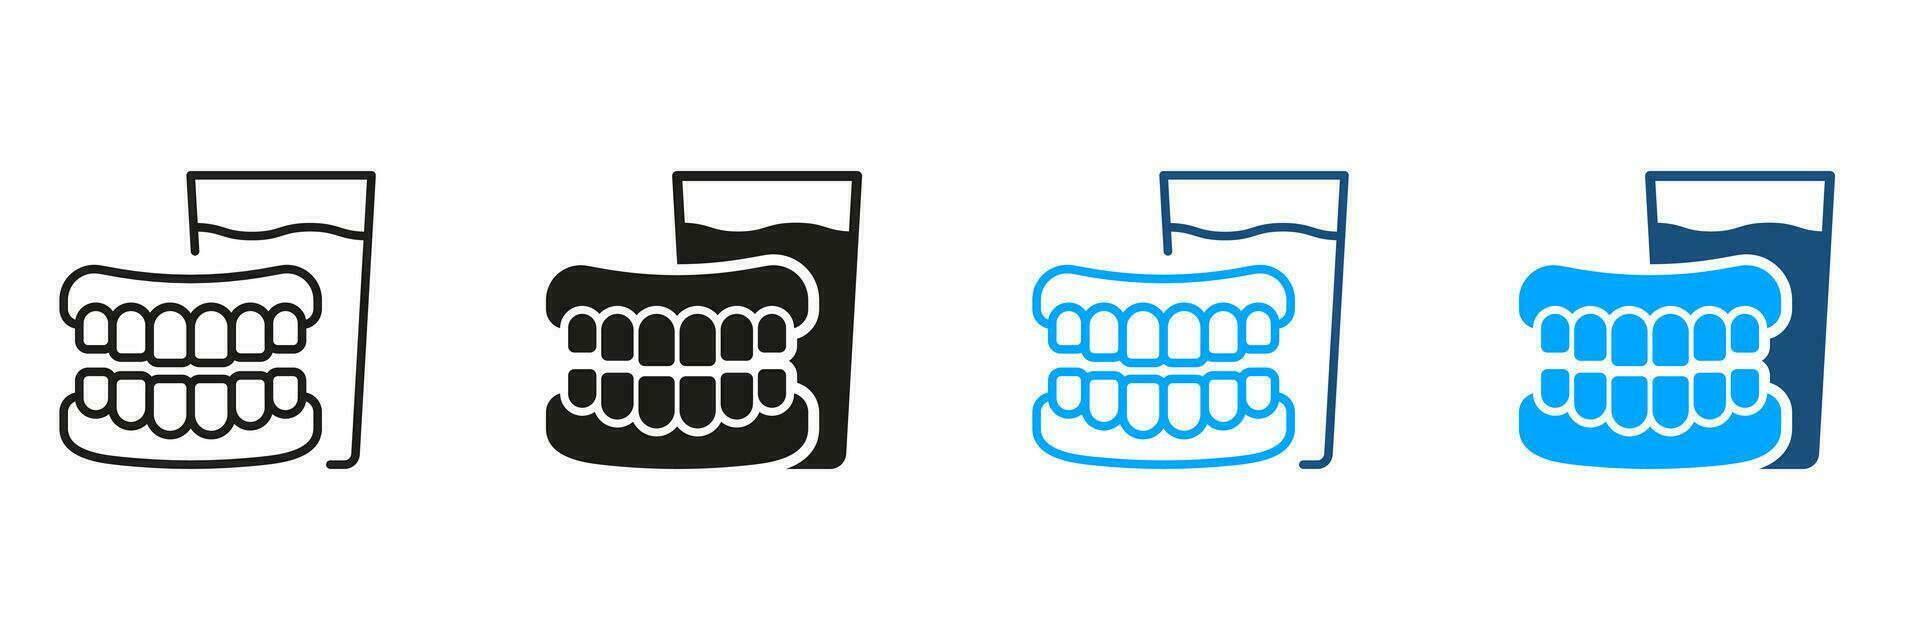 tandprotes med glas av vatten. mänsklig falsk tand piktogram. artificiell tand, dental behandling symbol samling. medicinsk dental protes- silhuett och linje ikon uppsättning. isolerat vektor illustration.